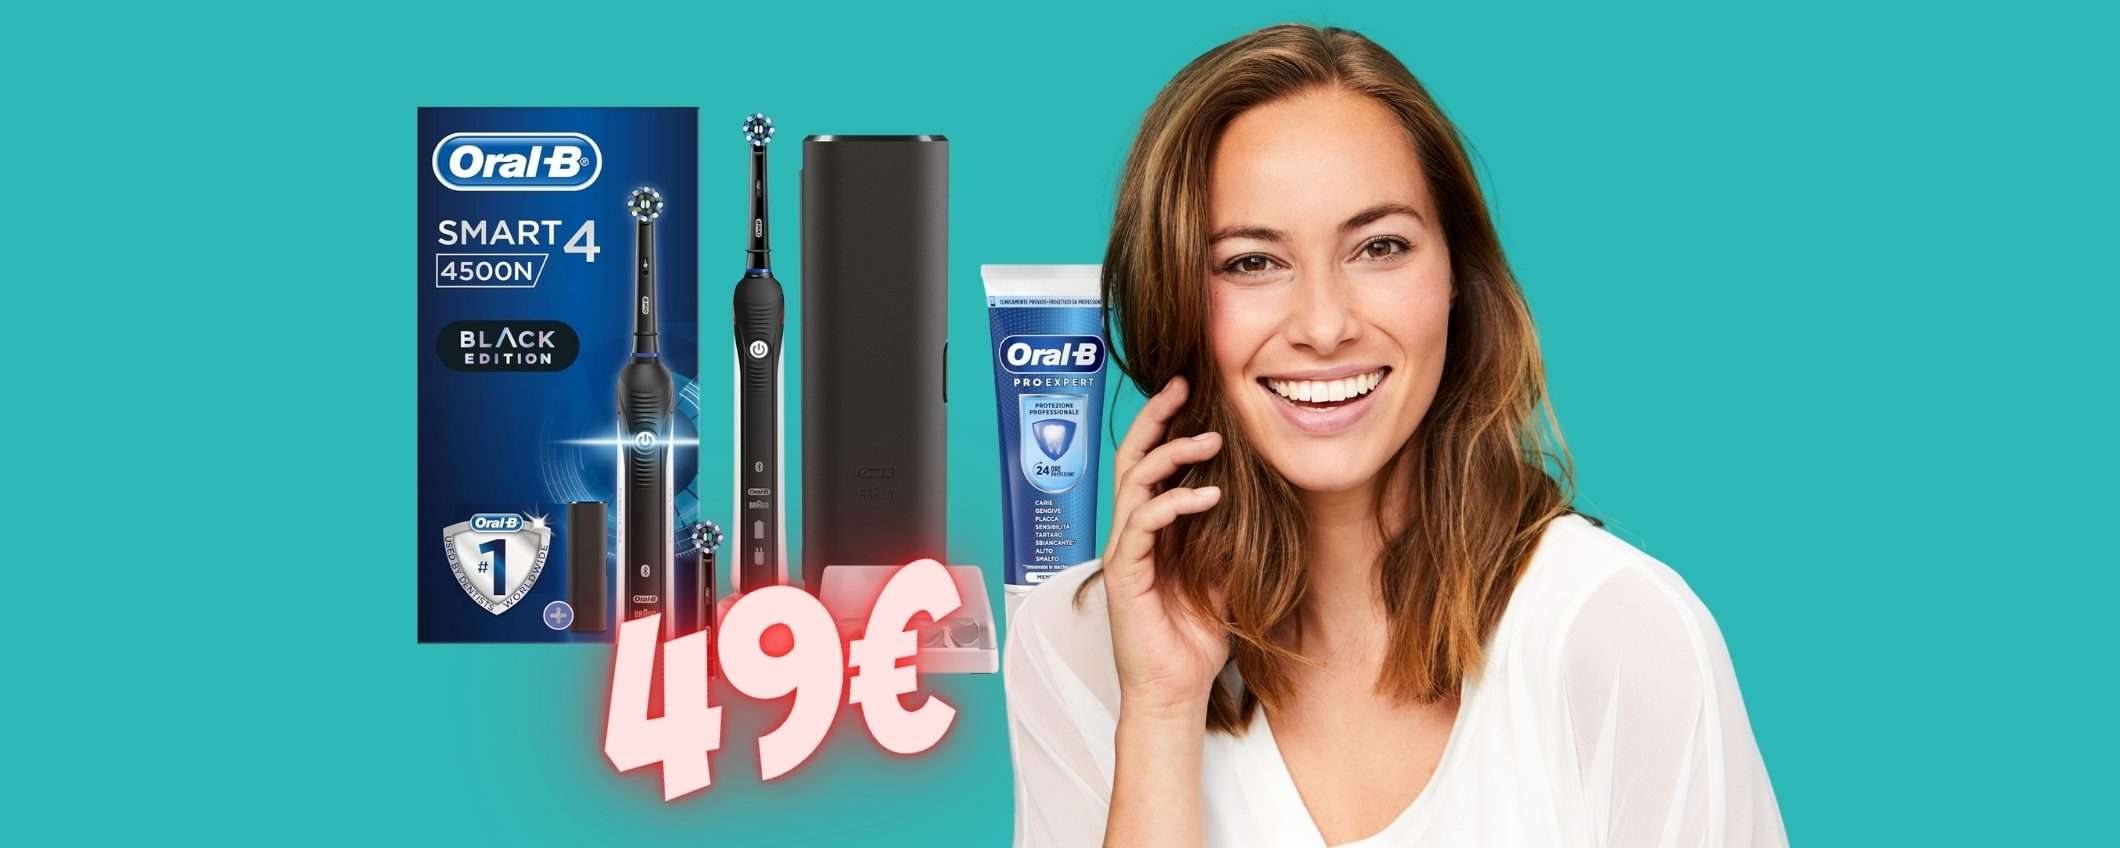 Spazzolino elettrico Oral-B Smart 4 in OFFERTA a TEMPO a soli 49€